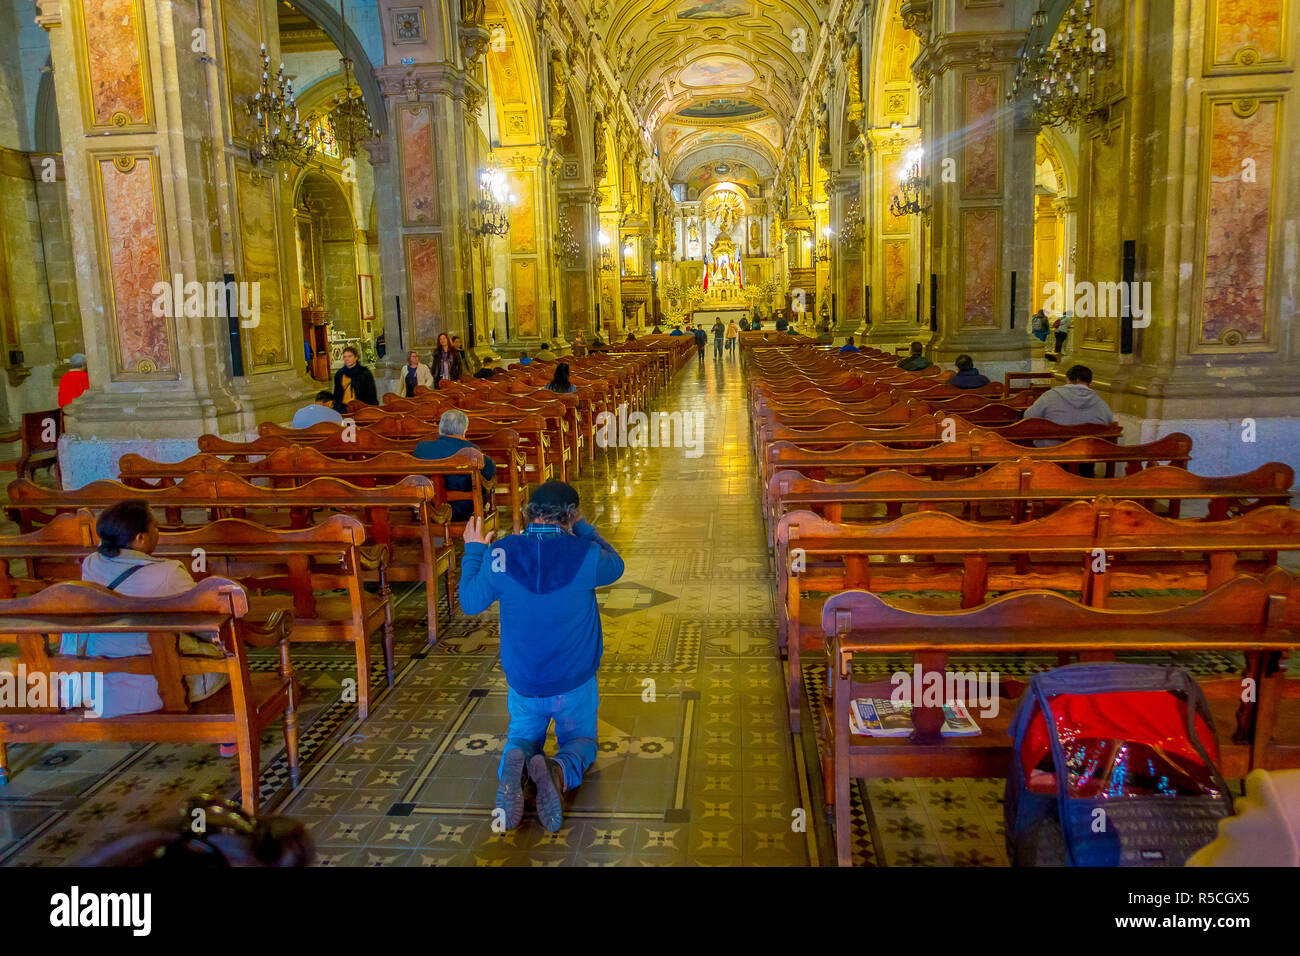 SANTIAGO, CHILE, Oktober 09, 2018: Unbekannter Menschen beten am Inneren der Kathedrale von Santiago de Compostela, das endgültige Ziel für Pilger zu Fuß entlang der weltberühmten Camino de Santiago Stockfoto